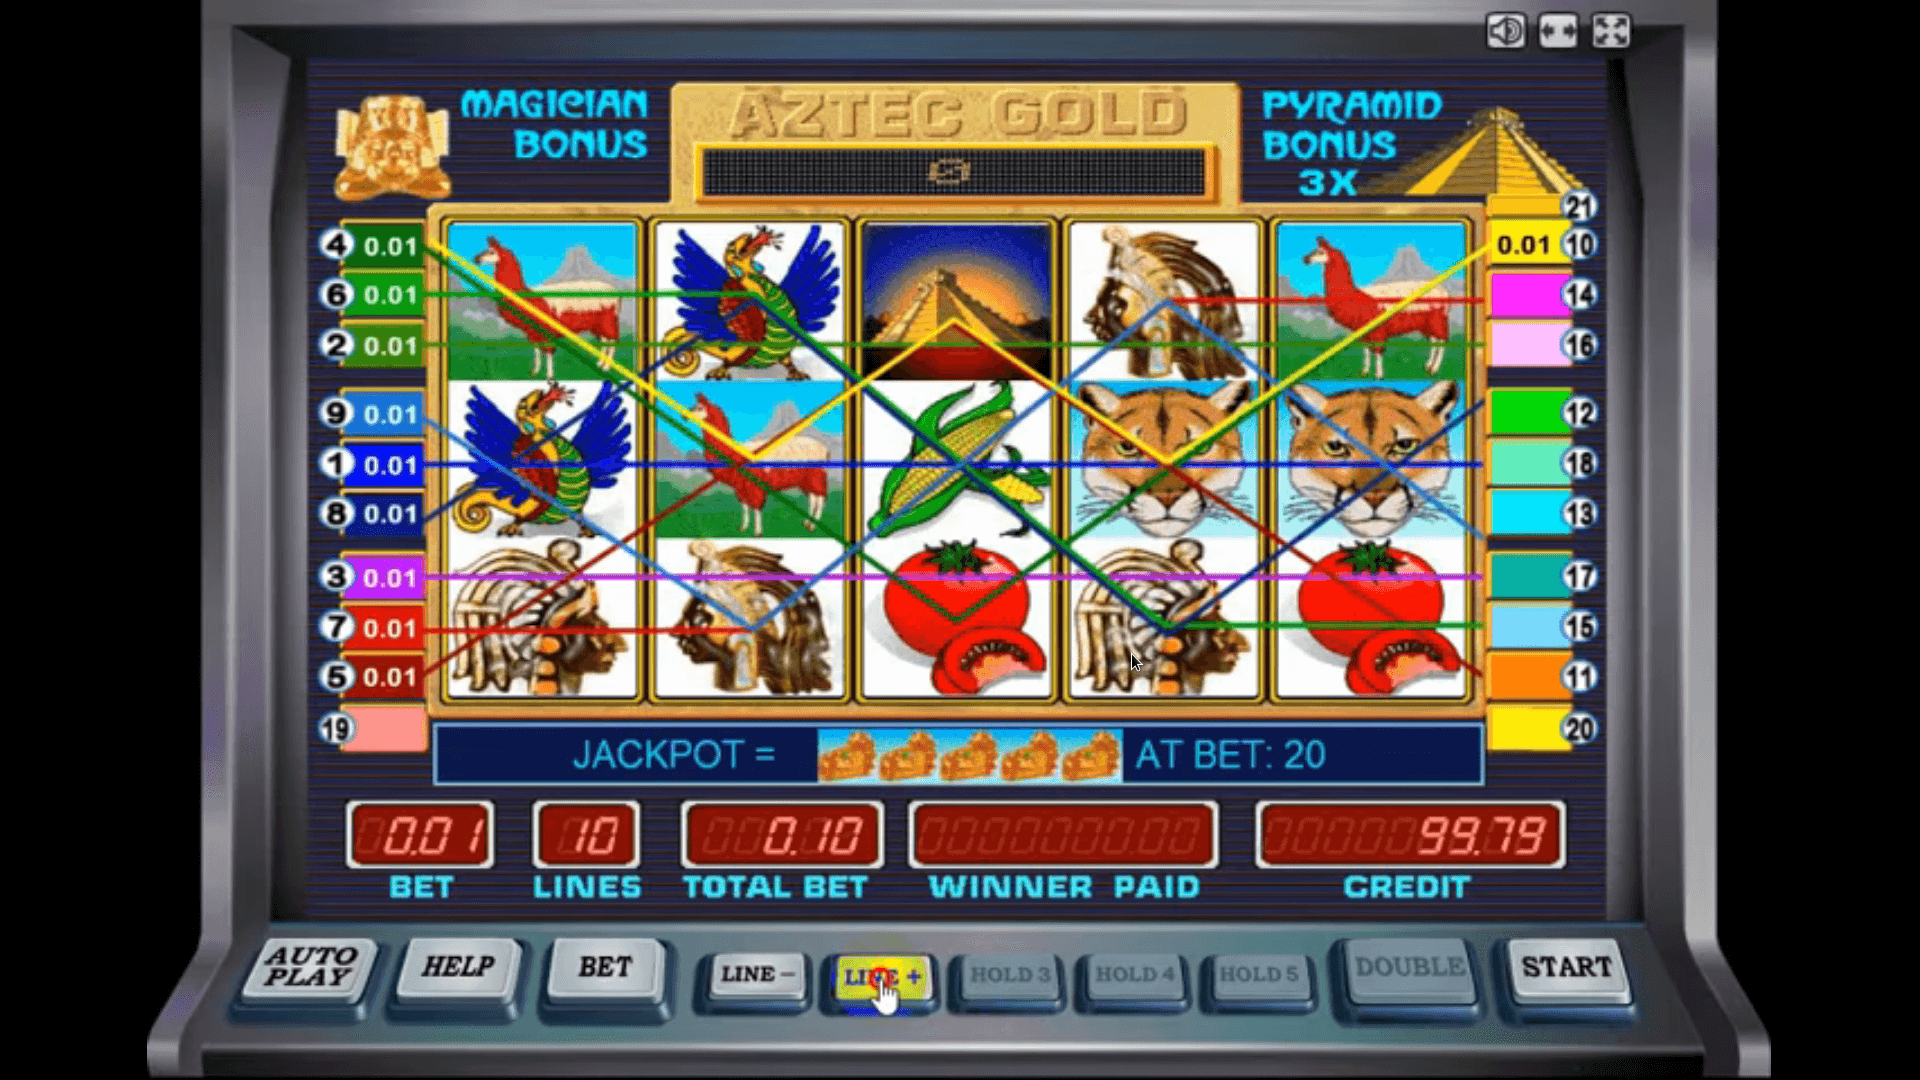 Игровые автоматы i пирамиды играть бесплатно играть в игровые автоматы по египетской тематике